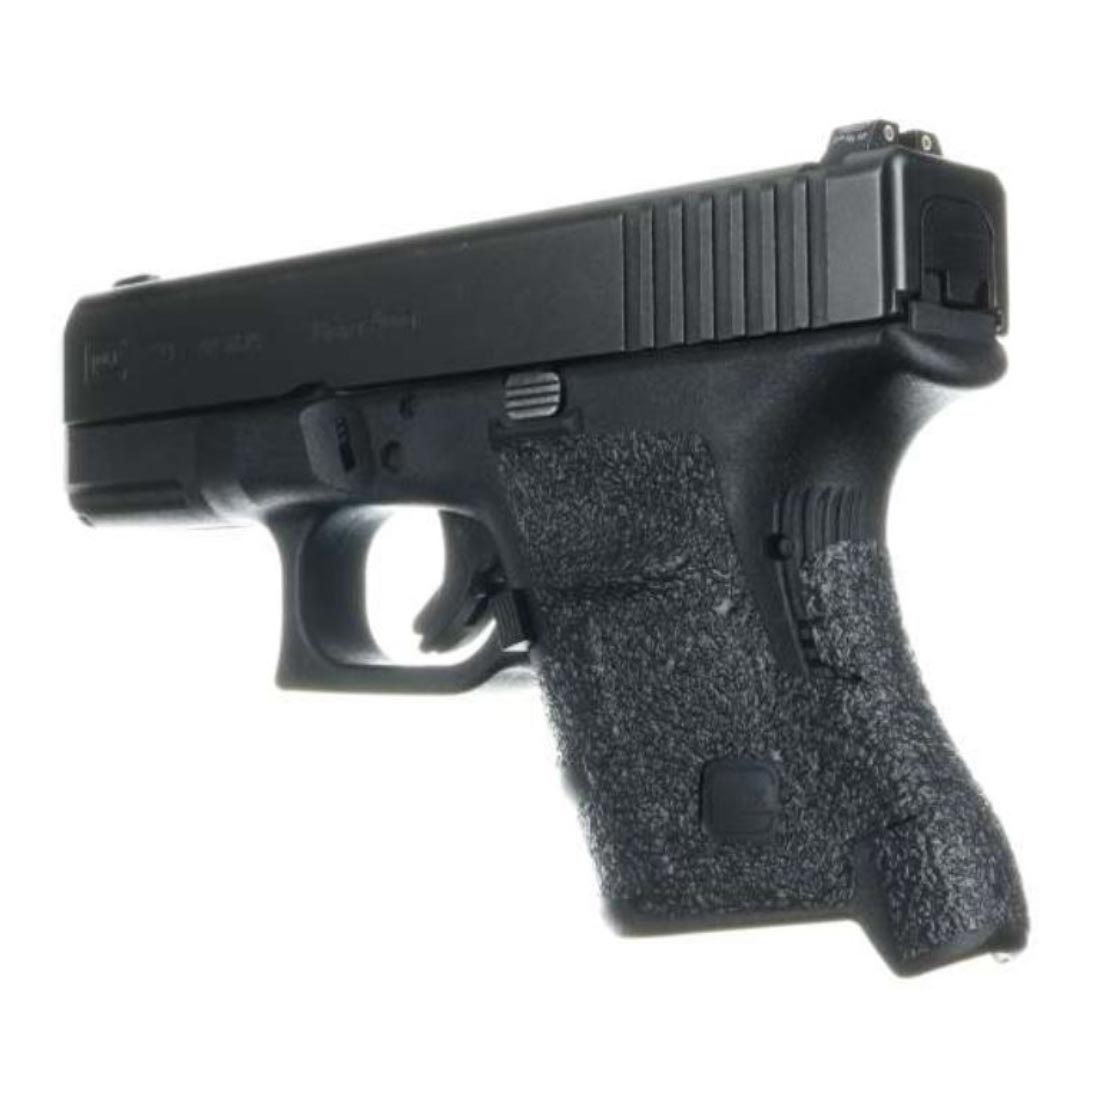 Grip Rubber Glock 29, 30 (gen 4) large backstrap